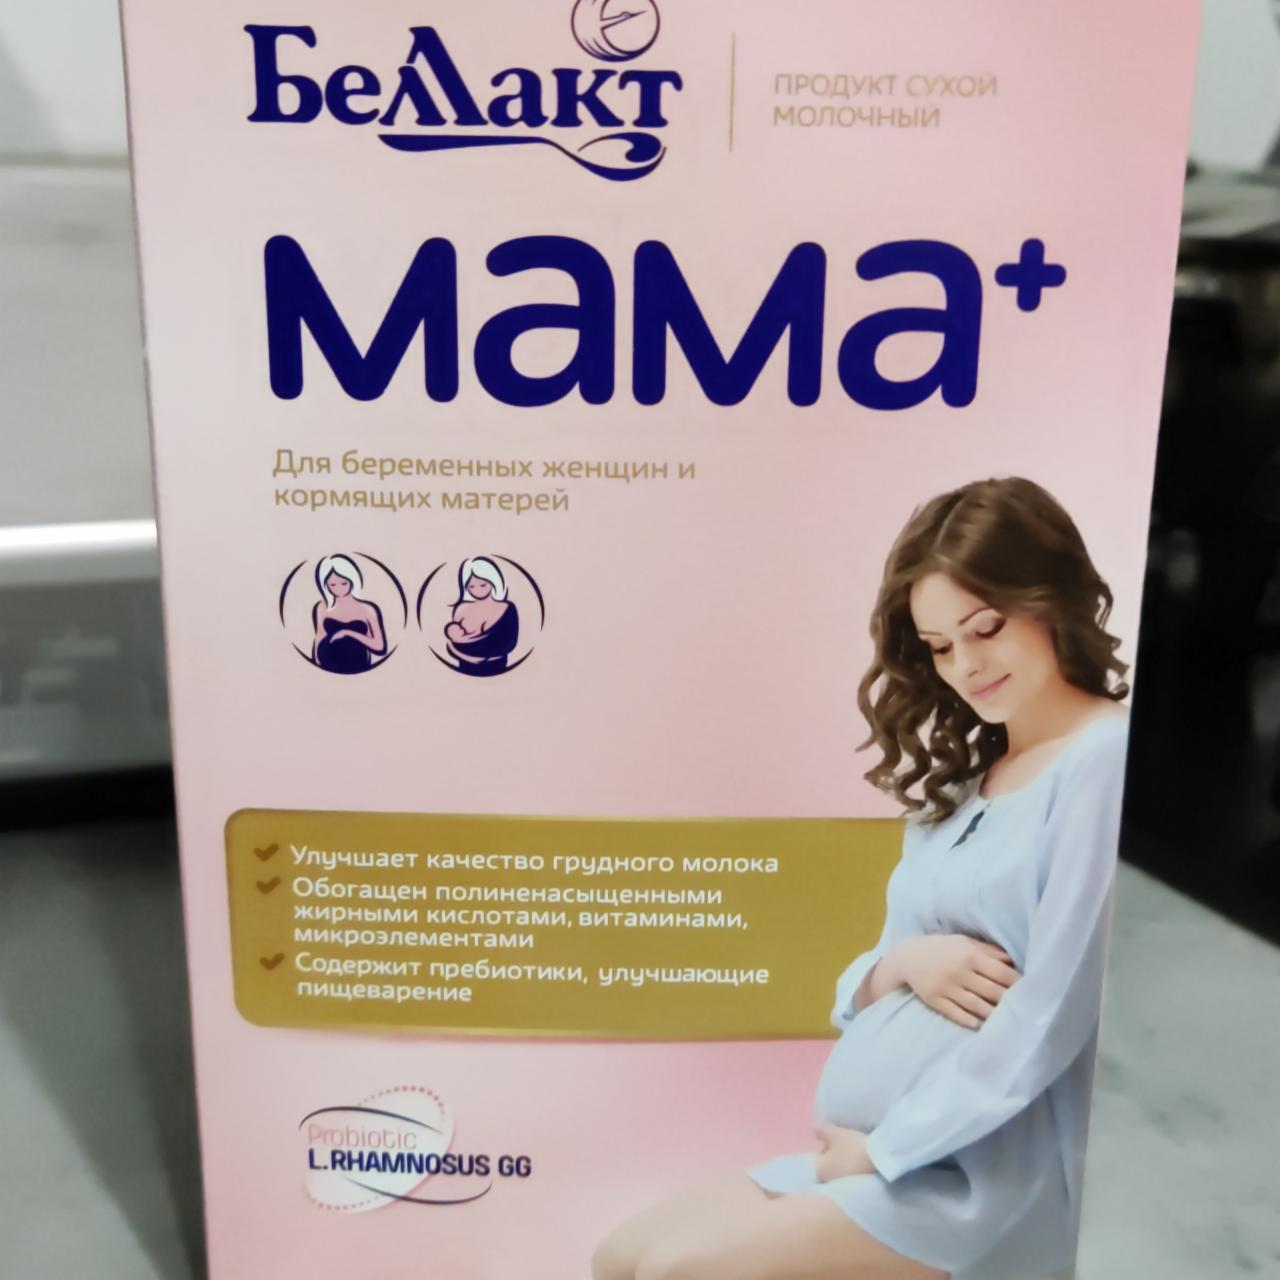 Фото - Сухой молочный продукт мама+ Беллакт